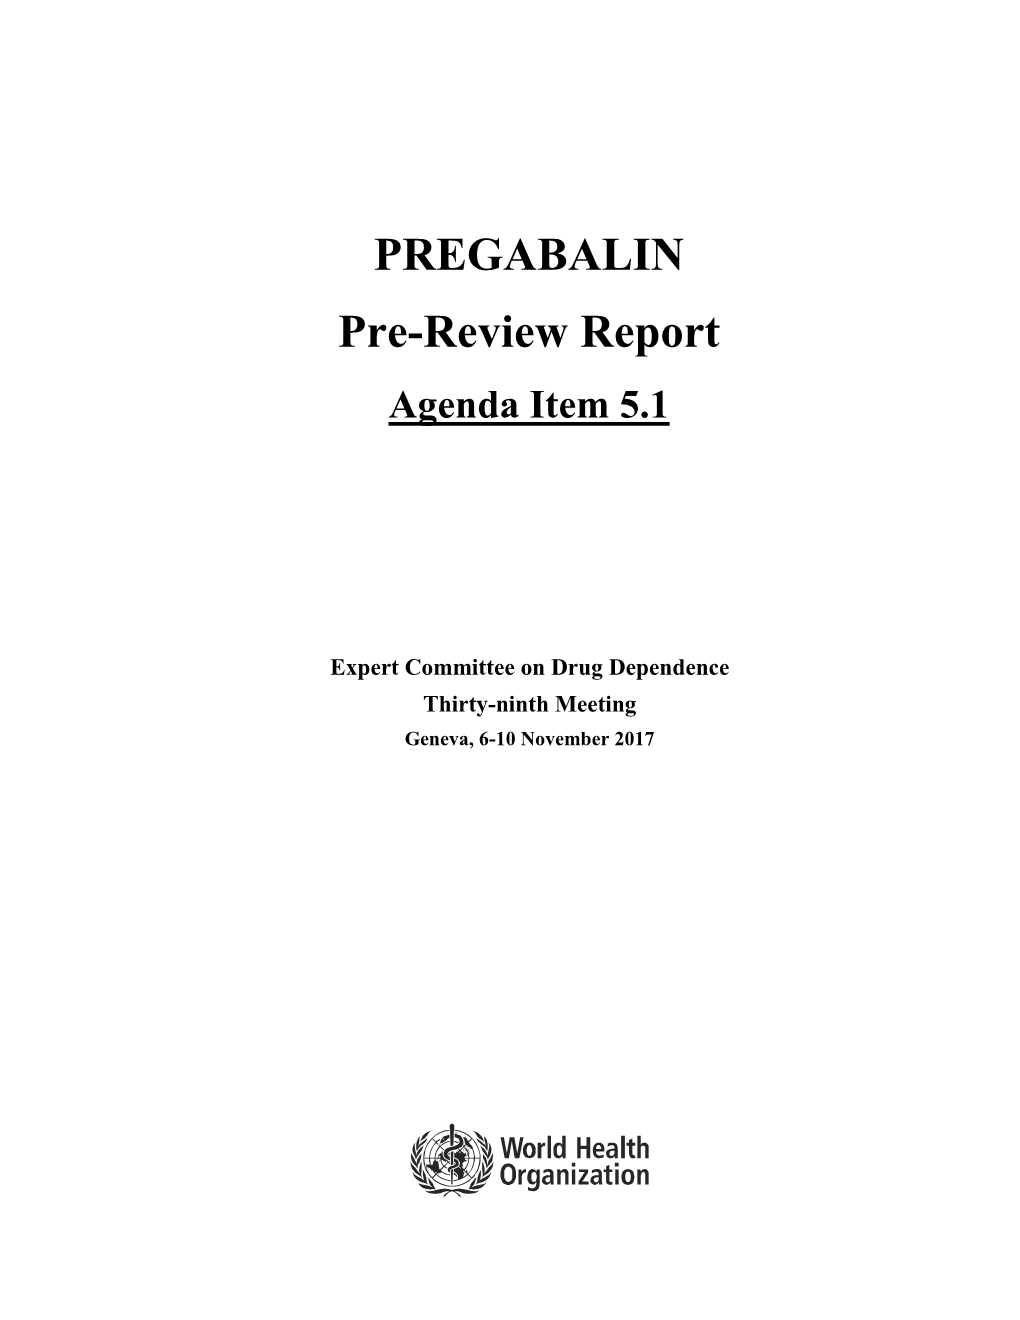 PREGABALIN Pre-Review Report Agenda Item 5.1